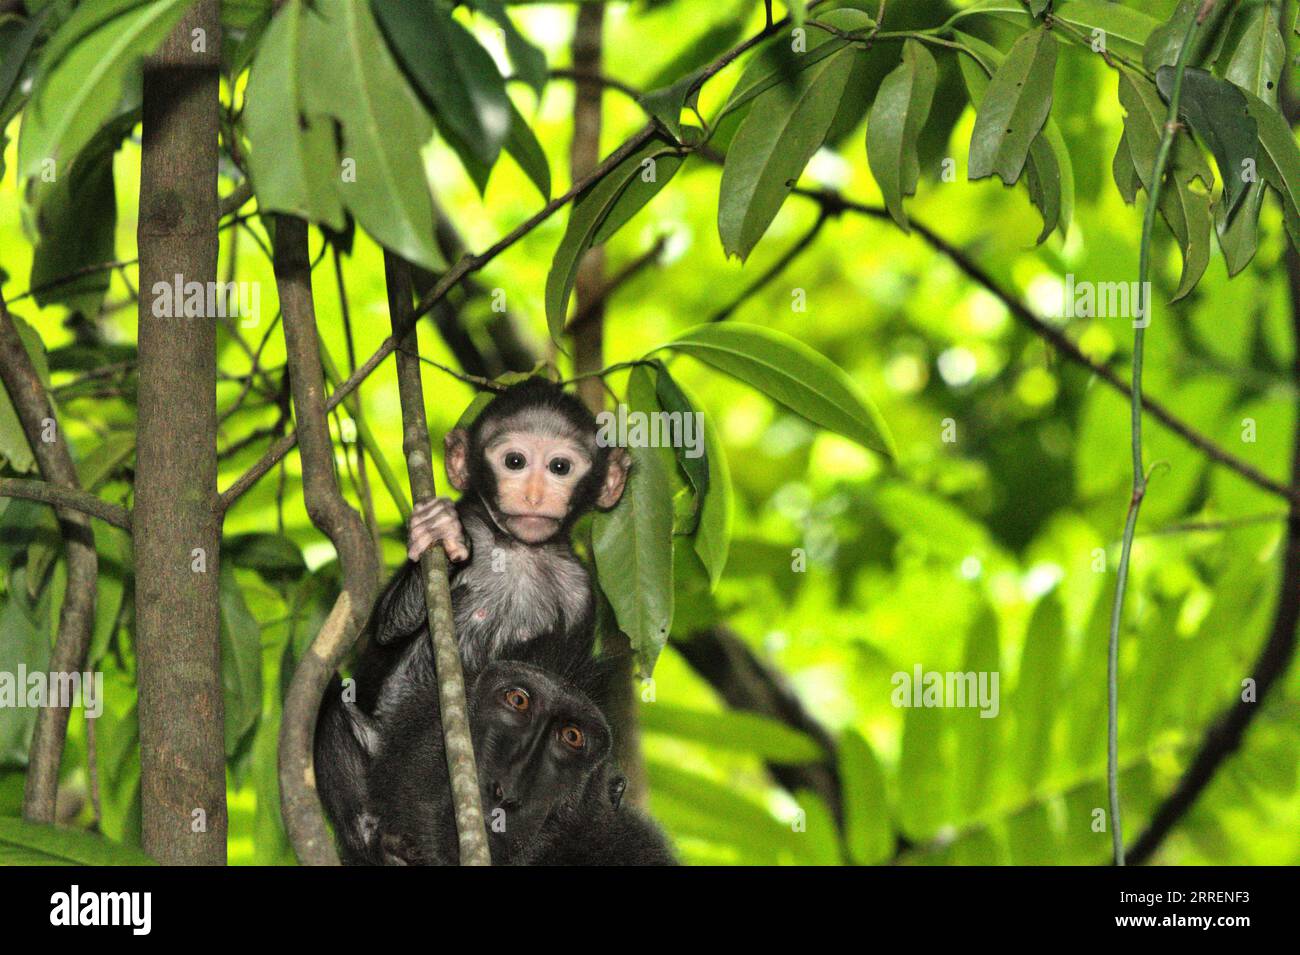 Ein Kleinkind von Makaken (Macaca nigra) starrt auf die Kamera, während es auf den Kopf seiner Mutter klettert, während es auf einem Baum im Tangkoko-Wald, Nord-Sulawesi, Indonesien, sucht. Die meisten Herausforderungen im Zusammenhang mit der Erhaltung von Primaten sind das Ergebnis menschlichen Verhaltens. Mit anderen Worten, die Erhaltung von Primaten ist eine verhaltensbezogene Herausforderung und erfordert daher verhaltensbasierte Lösungen. „Es braucht eine ganzheitliche Strategie der Bildung, des Kapazitätenaufbaus und der kommunalen Erhaltung, die sich auf eine Mischung aus Erkenntnissen aus verschiedenen sozialwissenschaftlichen Disziplinen sowie auf direkte Forschung mit Gemeinschaften in der Region stützt. Stockfoto